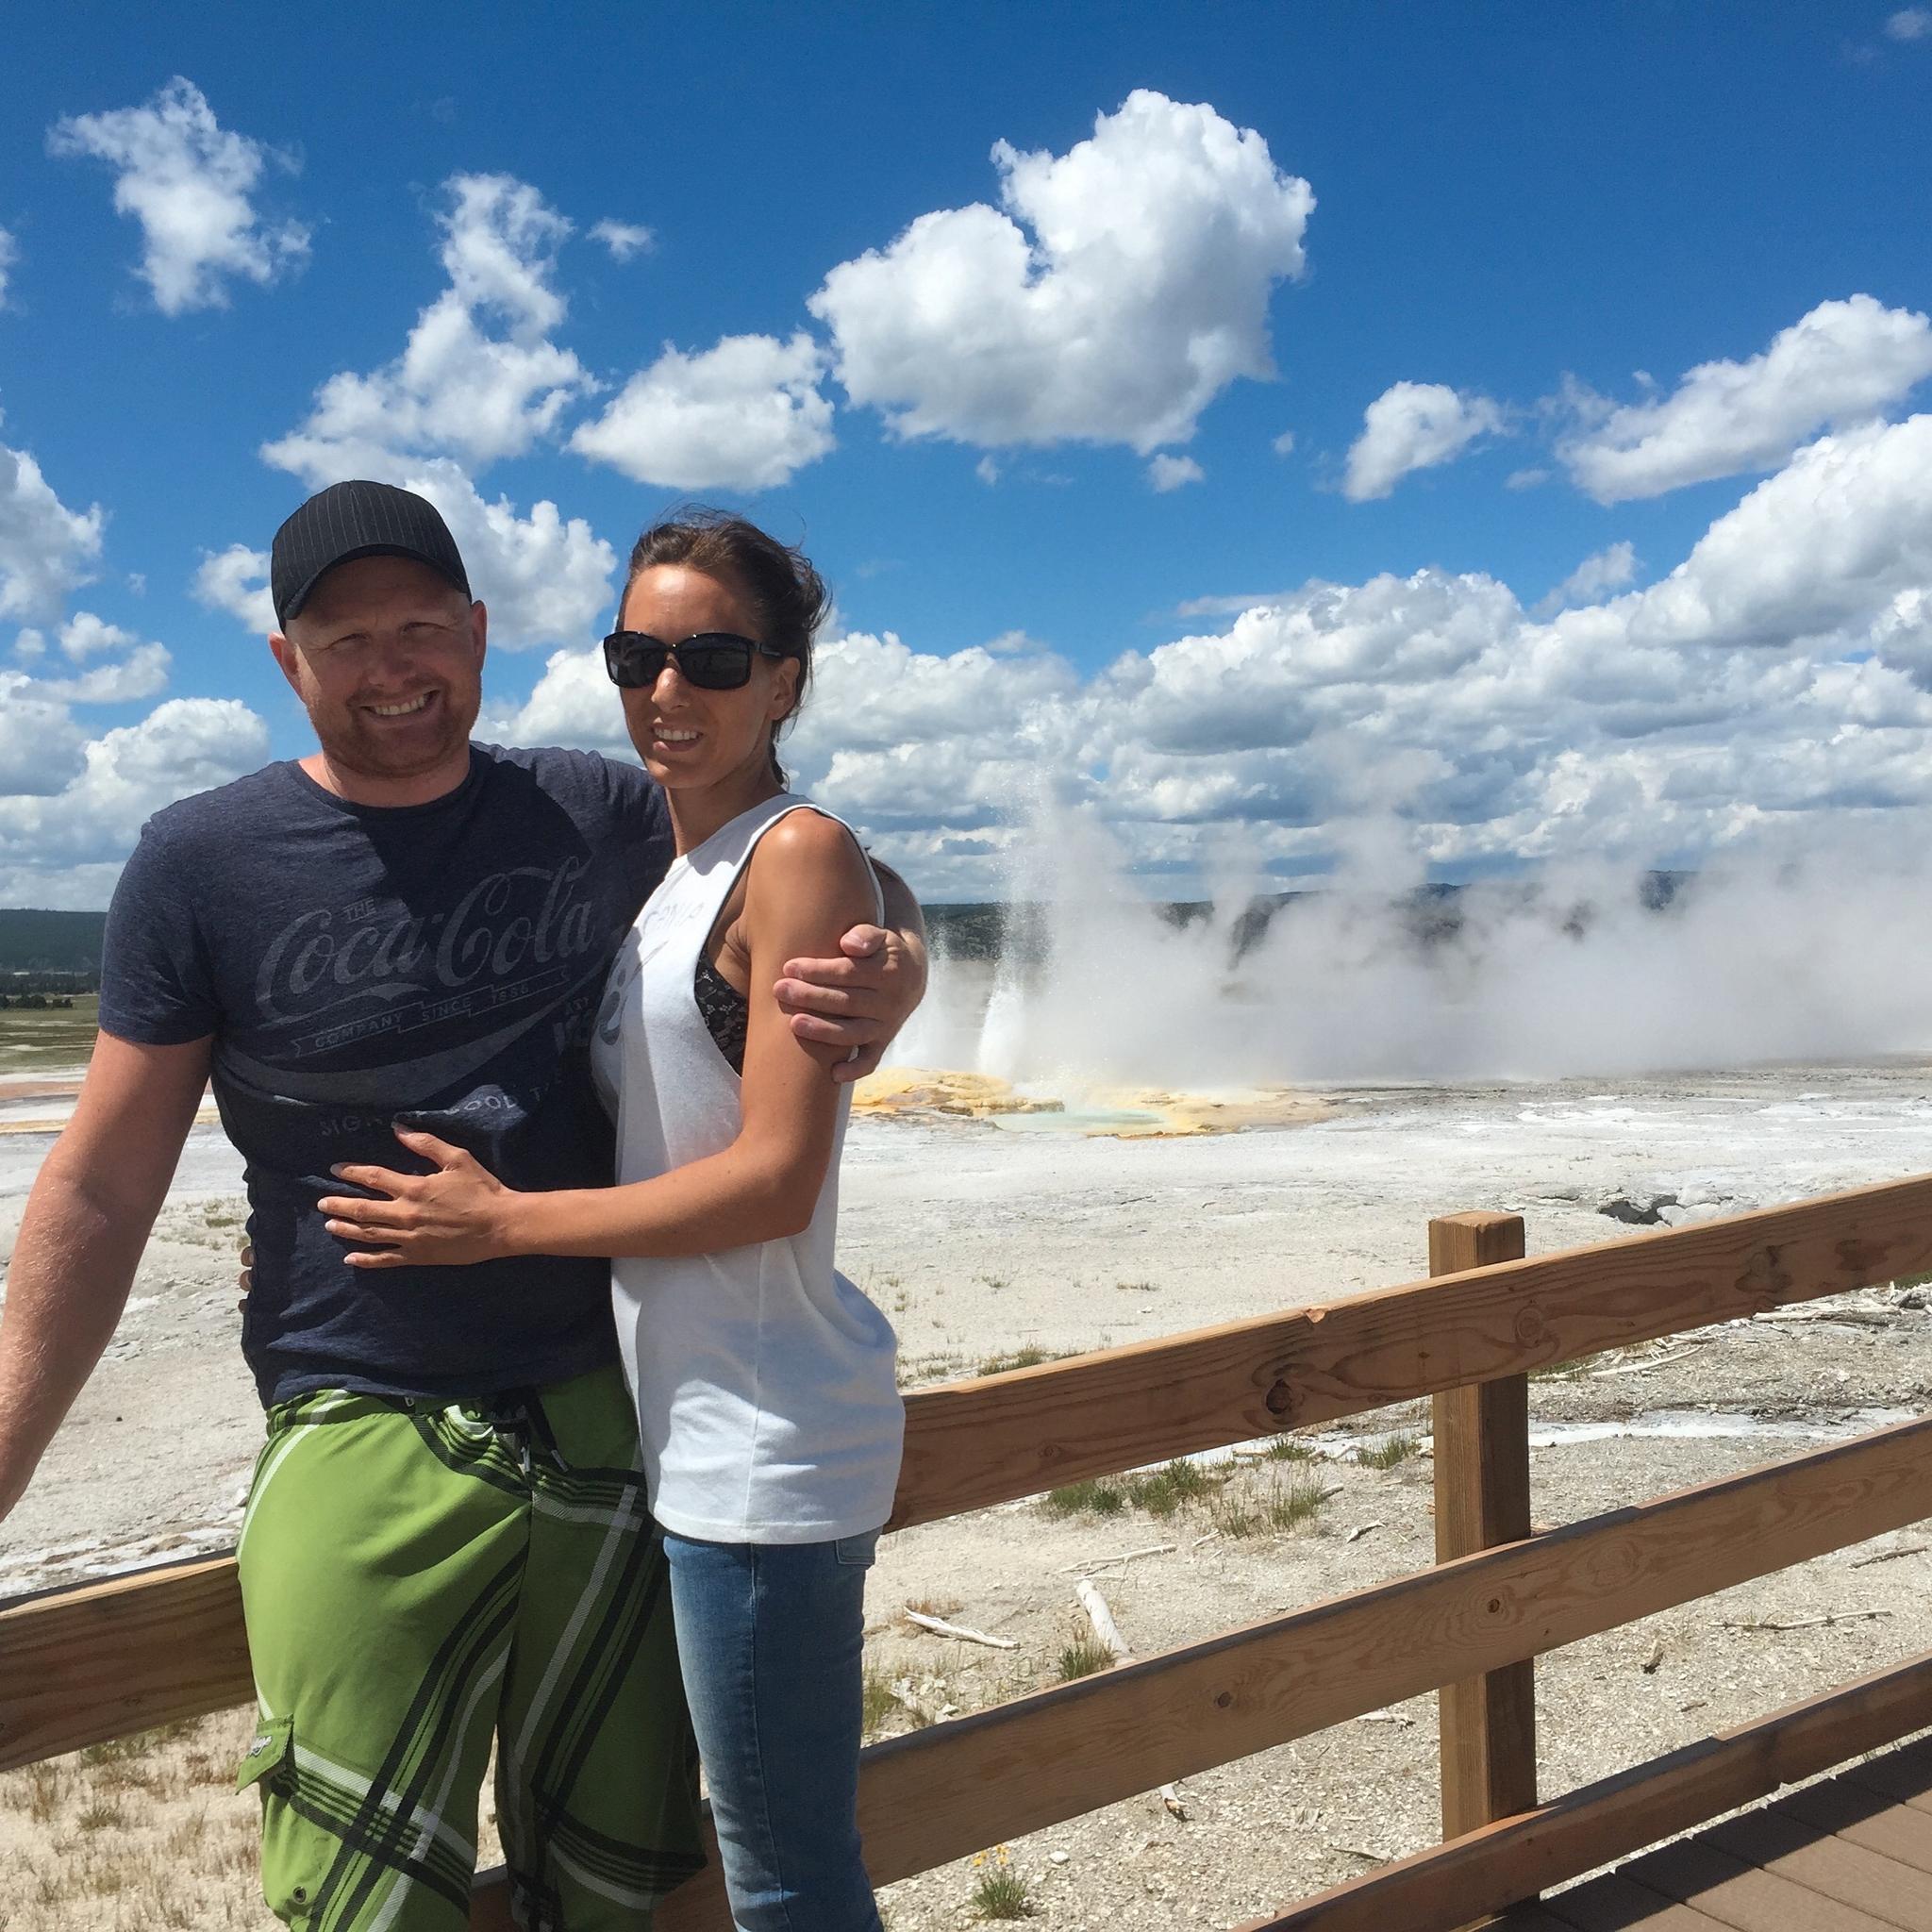 EN REISE FOR LIVET: Maria og Anders Rasmussen med en geysir i Yellowstone nasjonalpark i bakgrunnen.